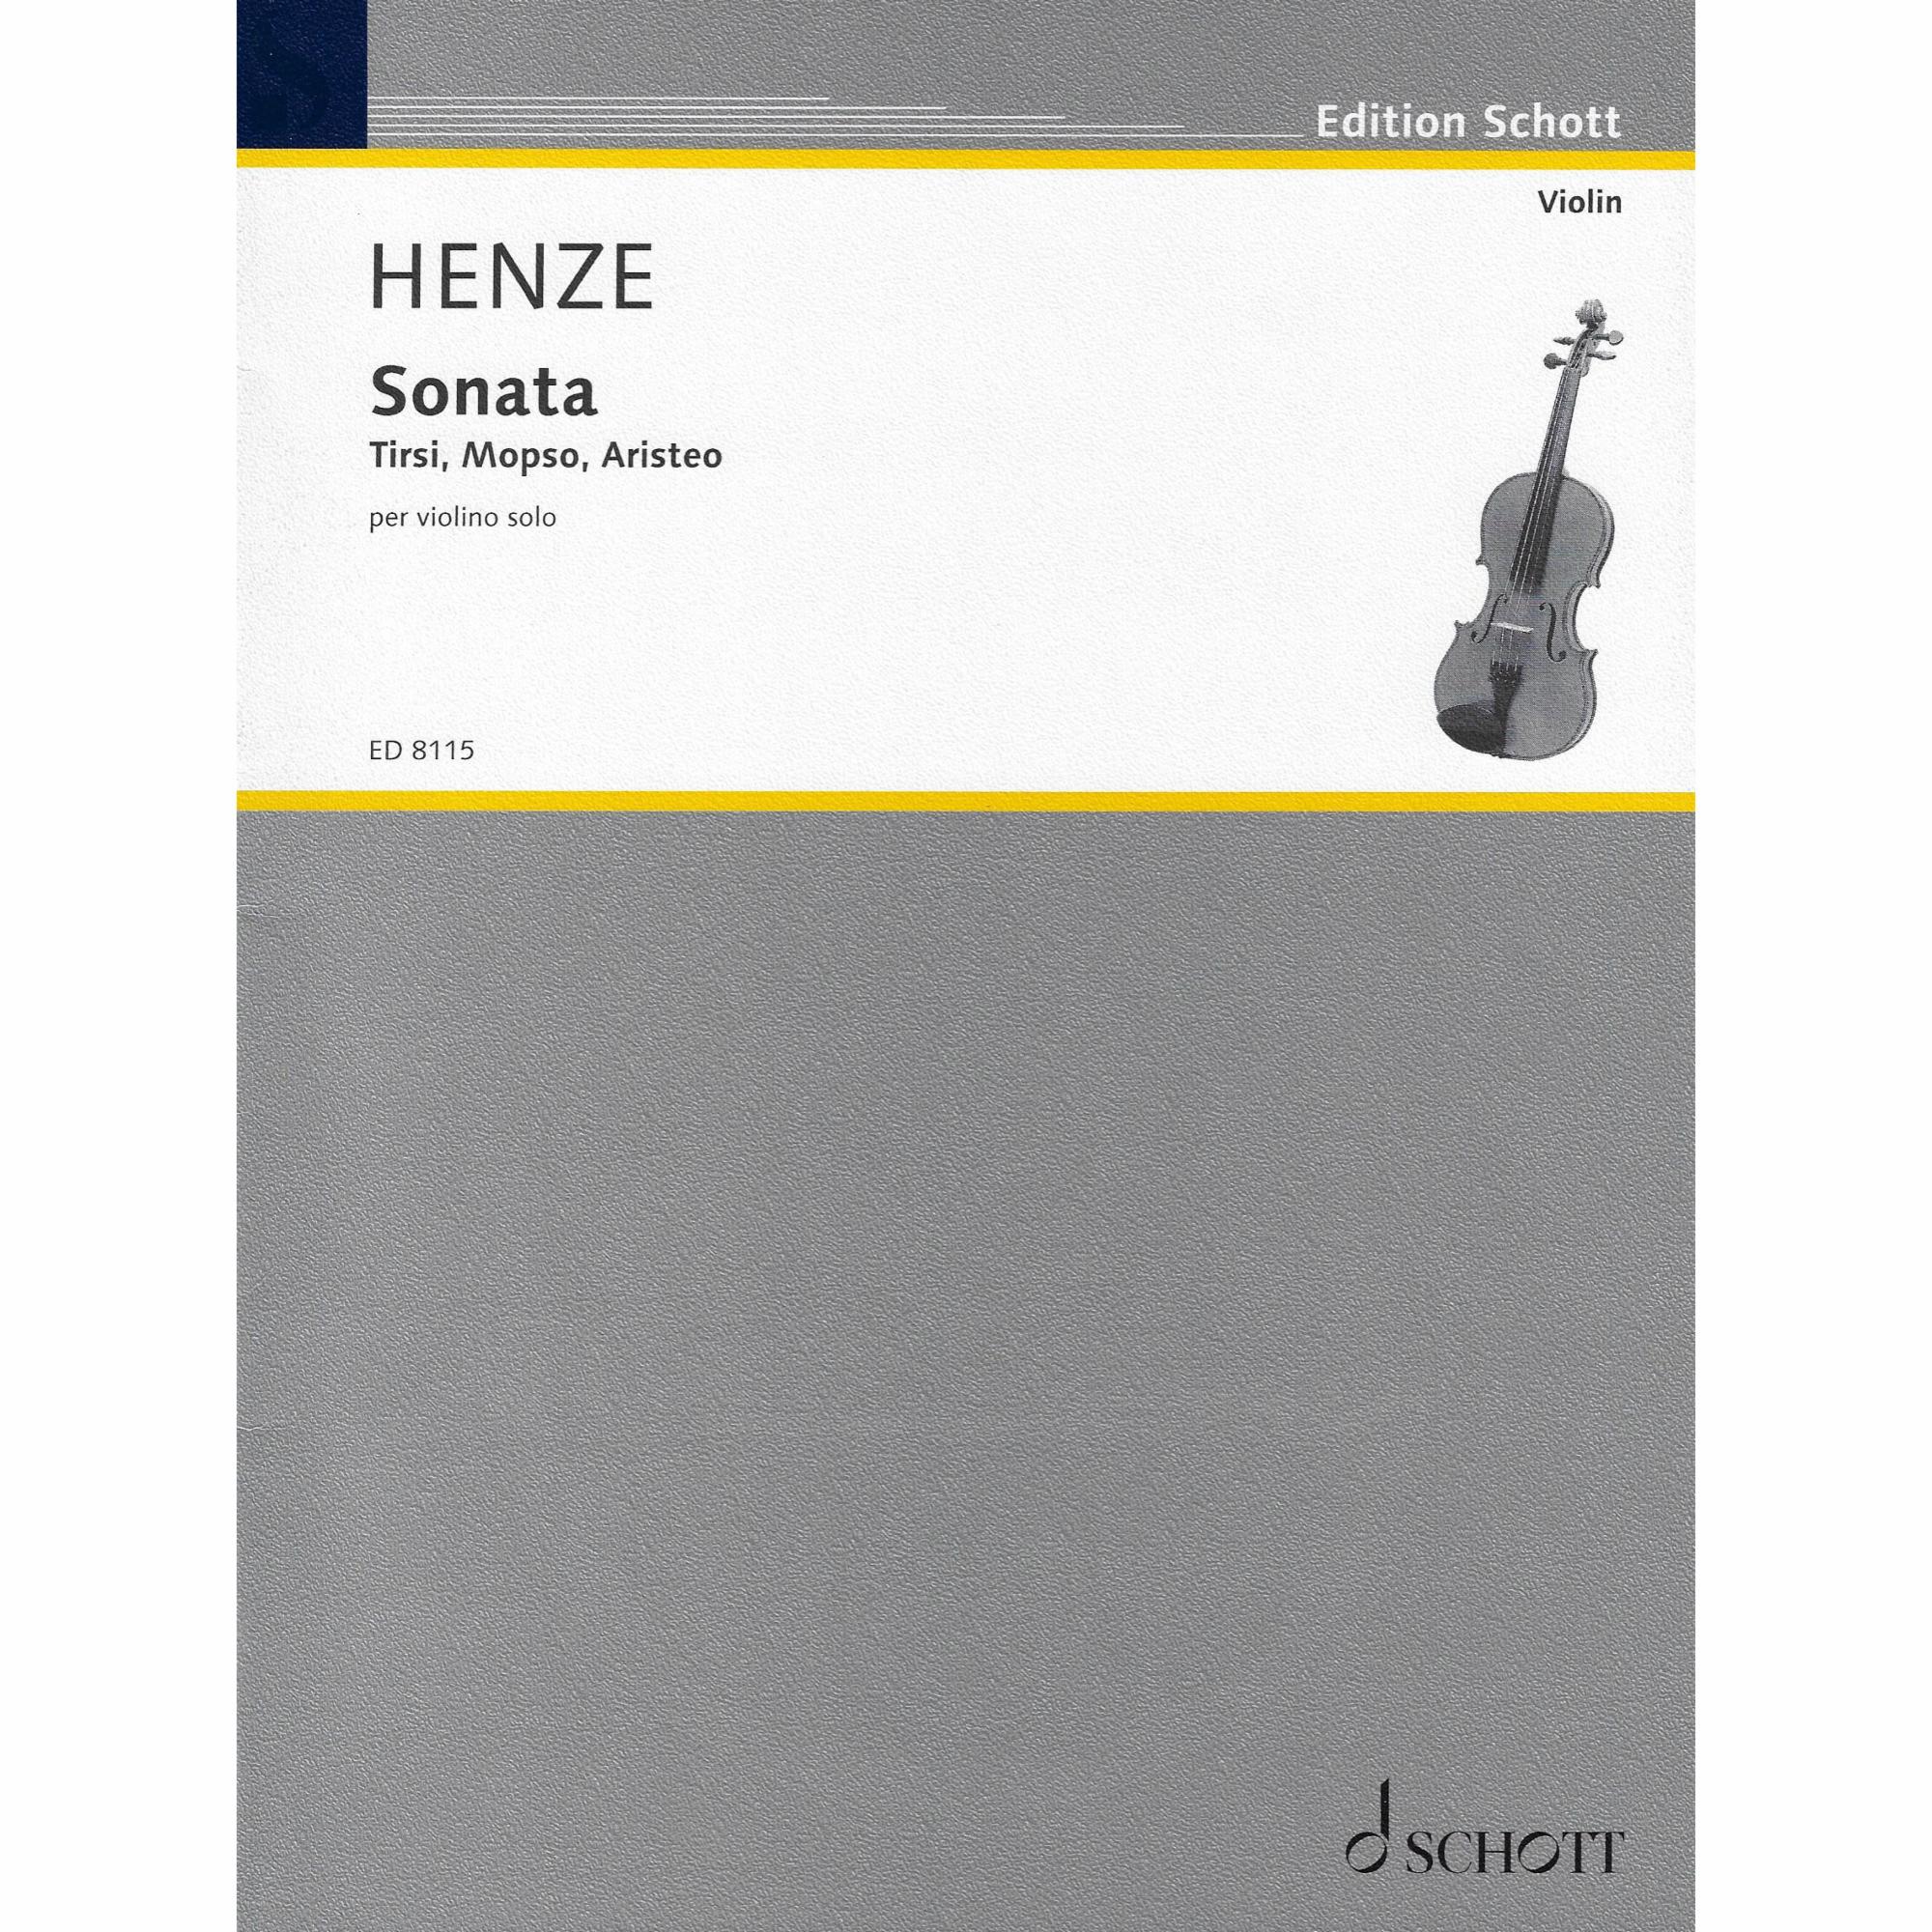 Henze -- Sonata for Solo Violin